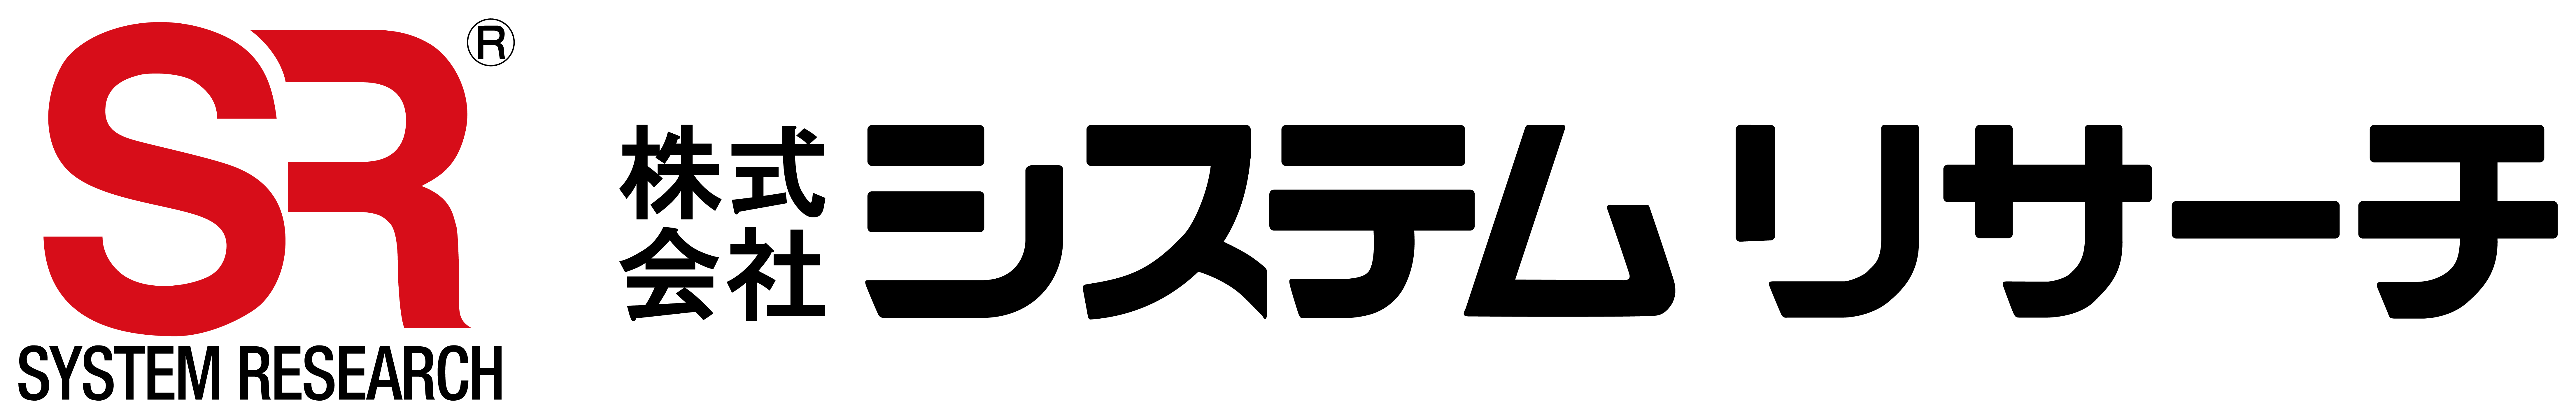 Logo von System Research